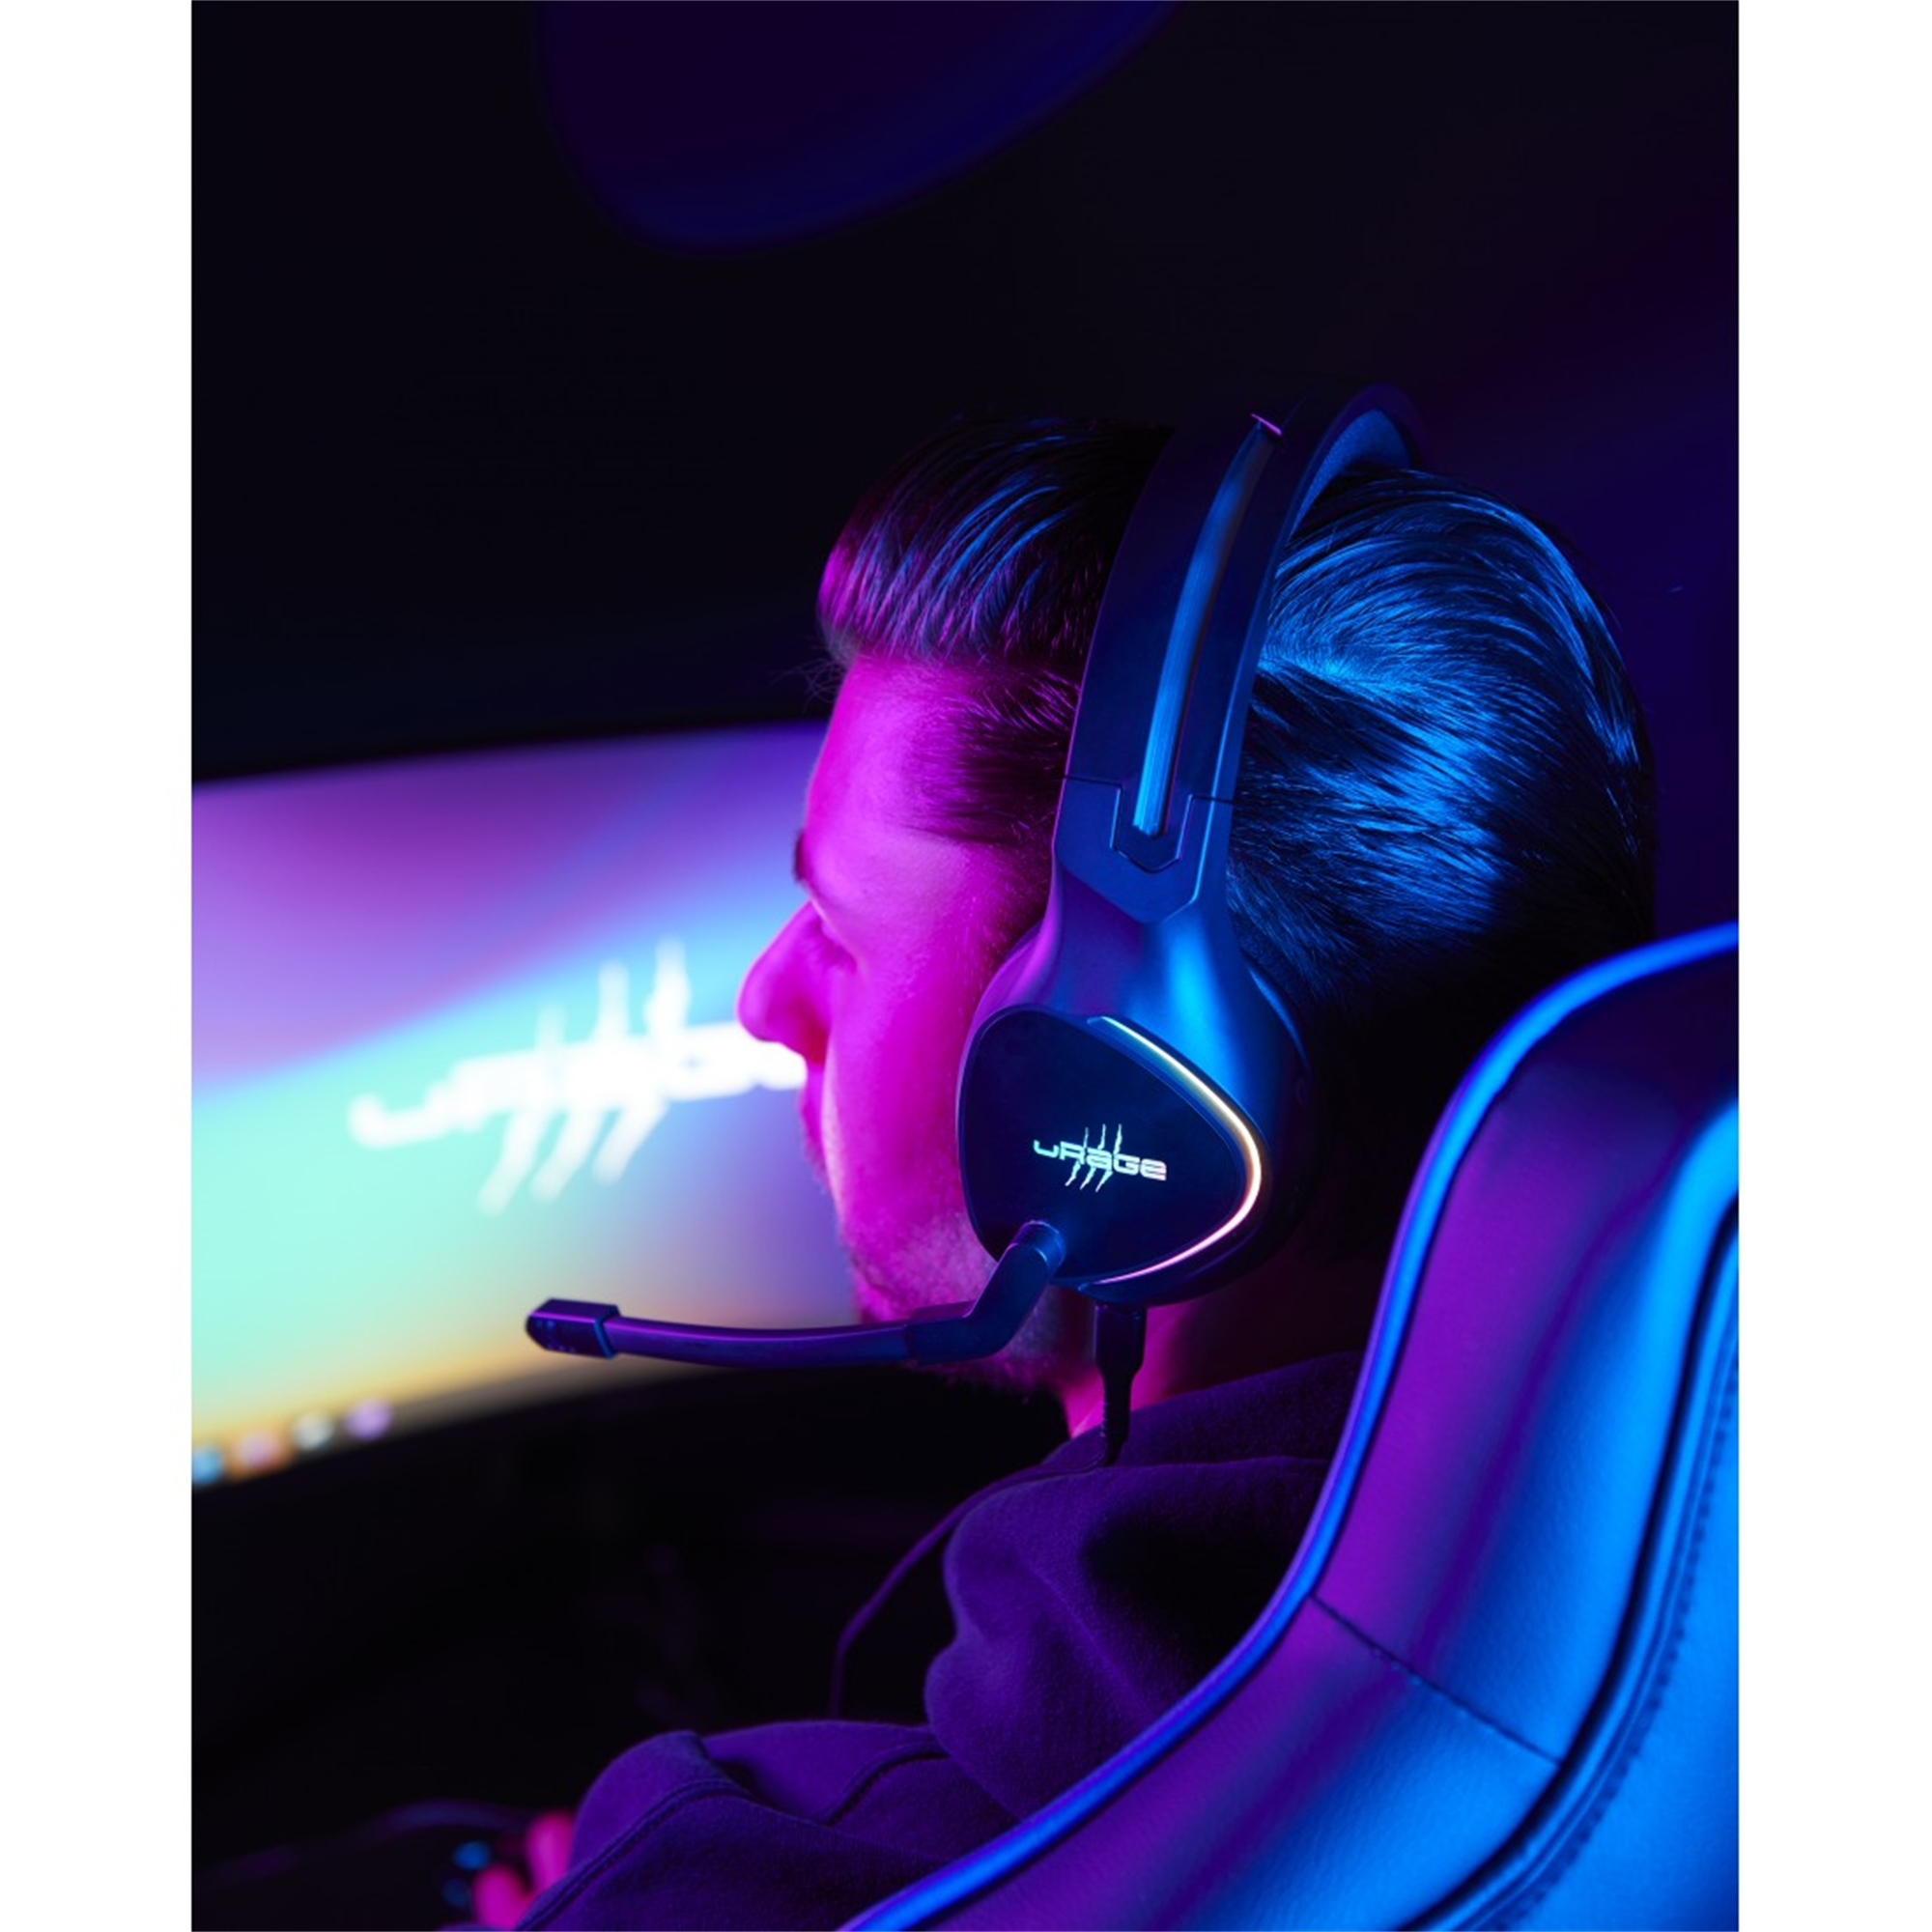 7.1 V2, SoundZ Schwarz Over-ear Gaming-Headset 710 URAGE